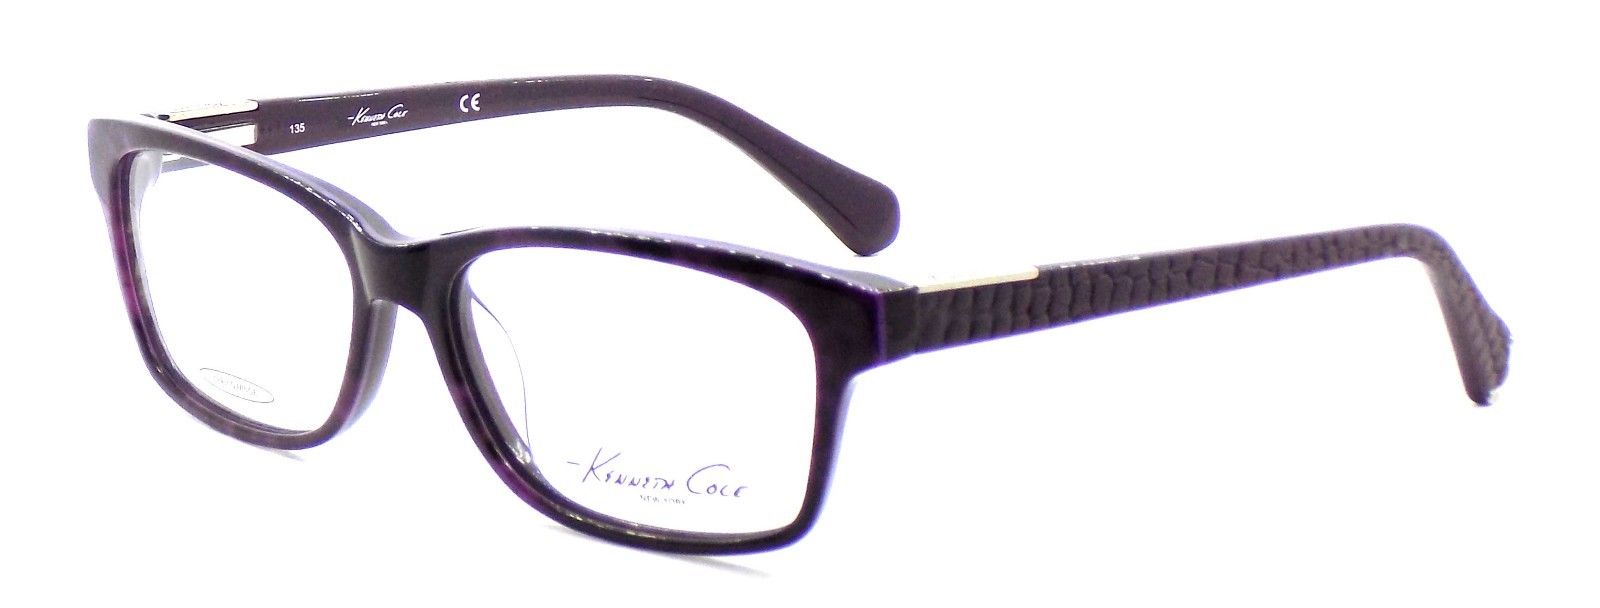 1-Kenneth Cole NY KC205 083 Women's Eyeglasses Frames 54-15-135 Violet + CASE-664689600120-IKSpecs